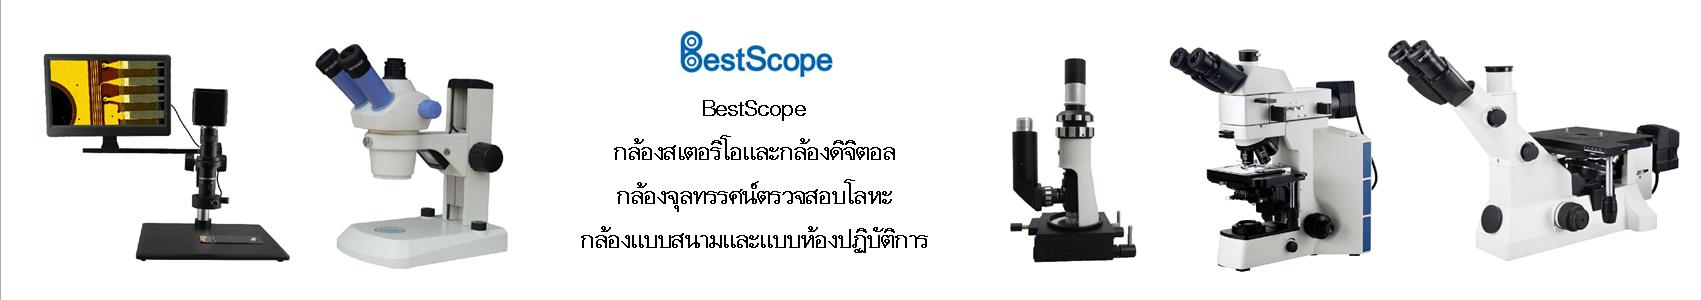 BestScope-Banner